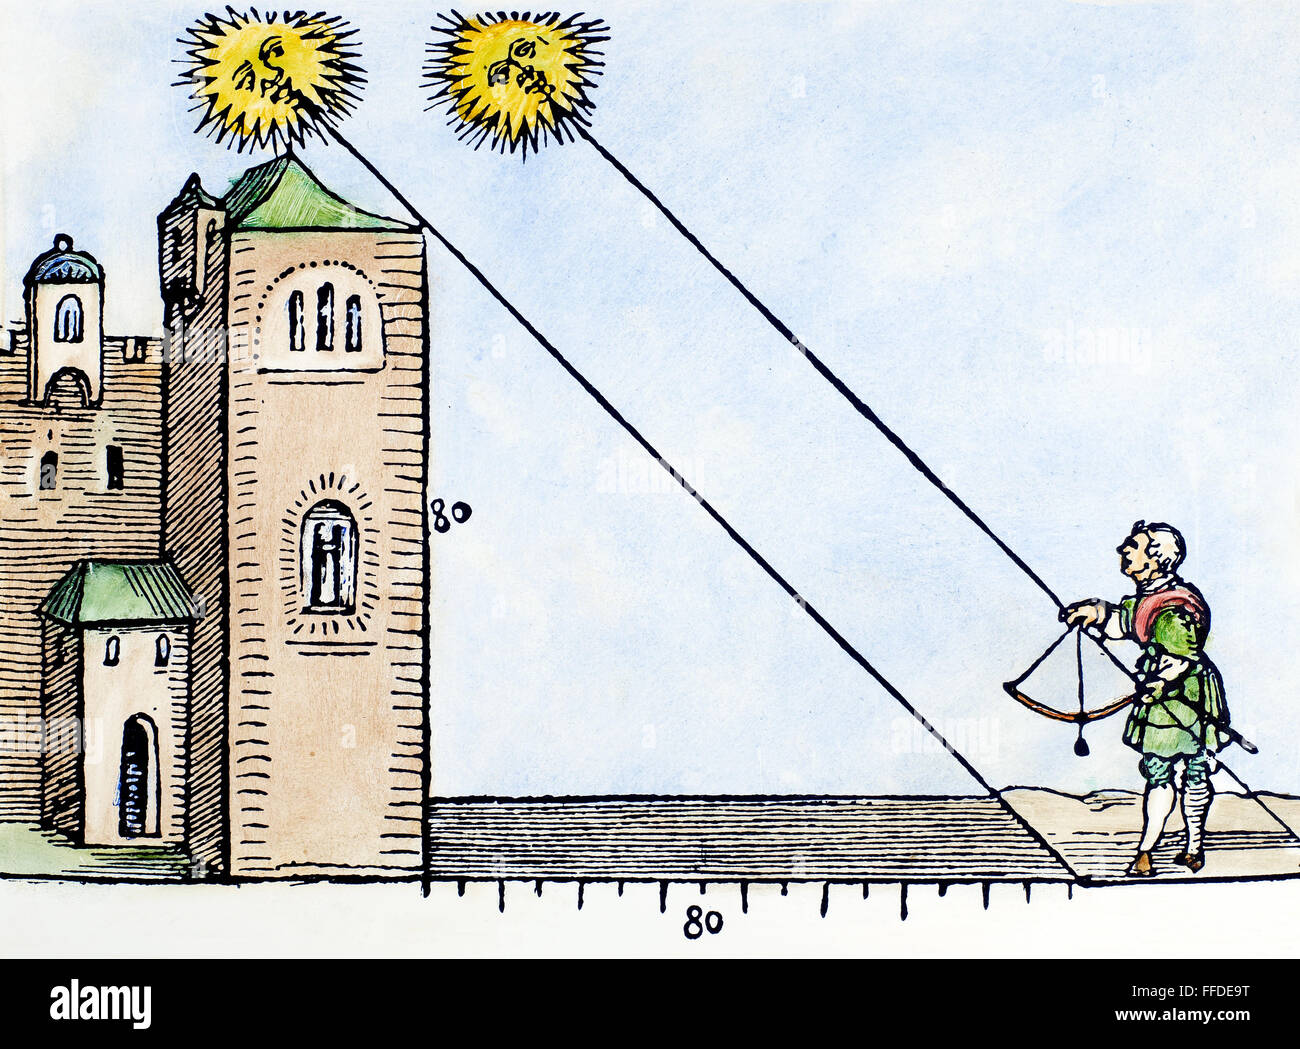 Astrónomo, 1533. /NAn astrónomo utilizando un sextante astronómico para medir la altura del sol y la altura de un edificio. Xilografía, Alemán, de Petrus Aprianus /n'Instrument-Buch', 1533. Foto de stock